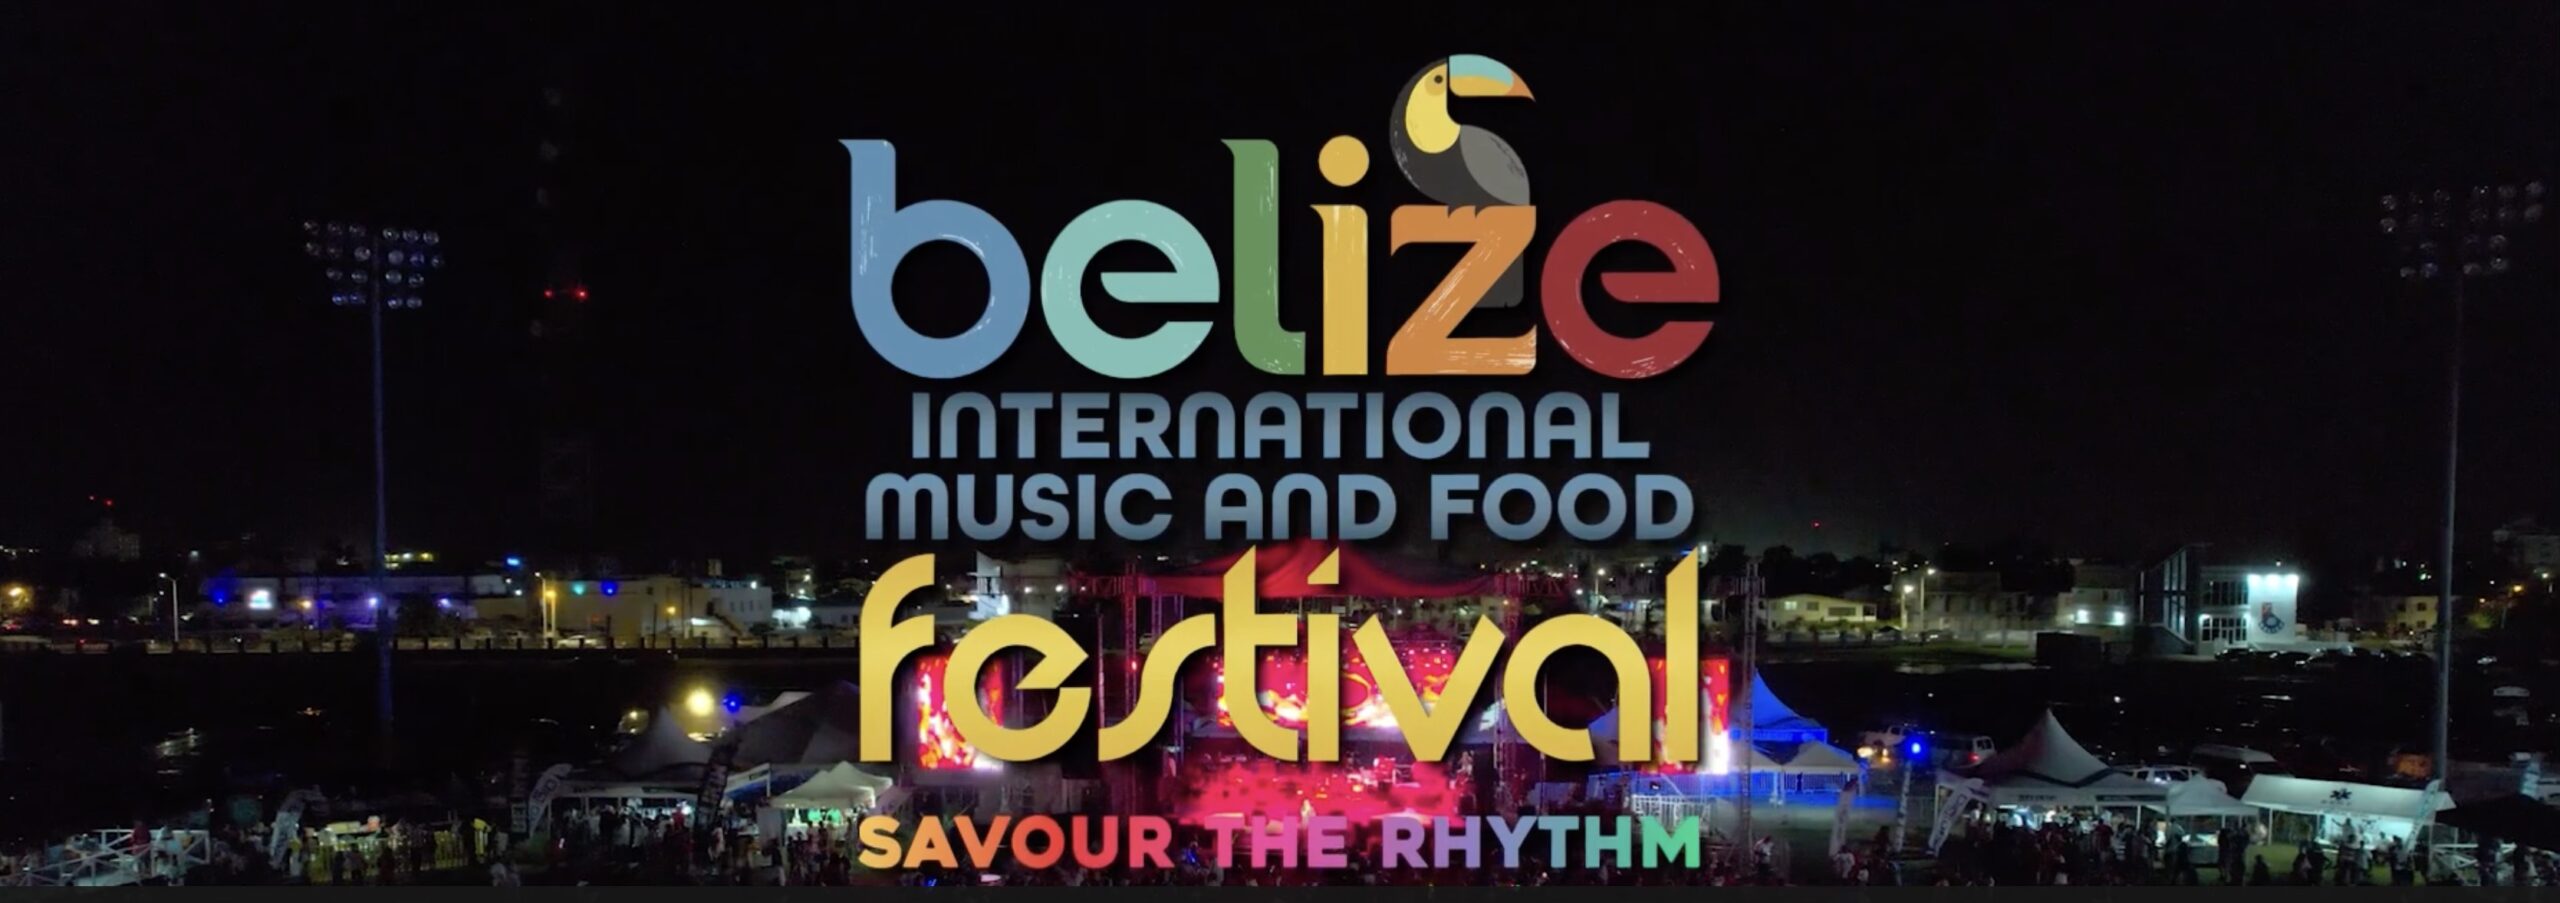 Festival Internacional de Música e Comida Belize